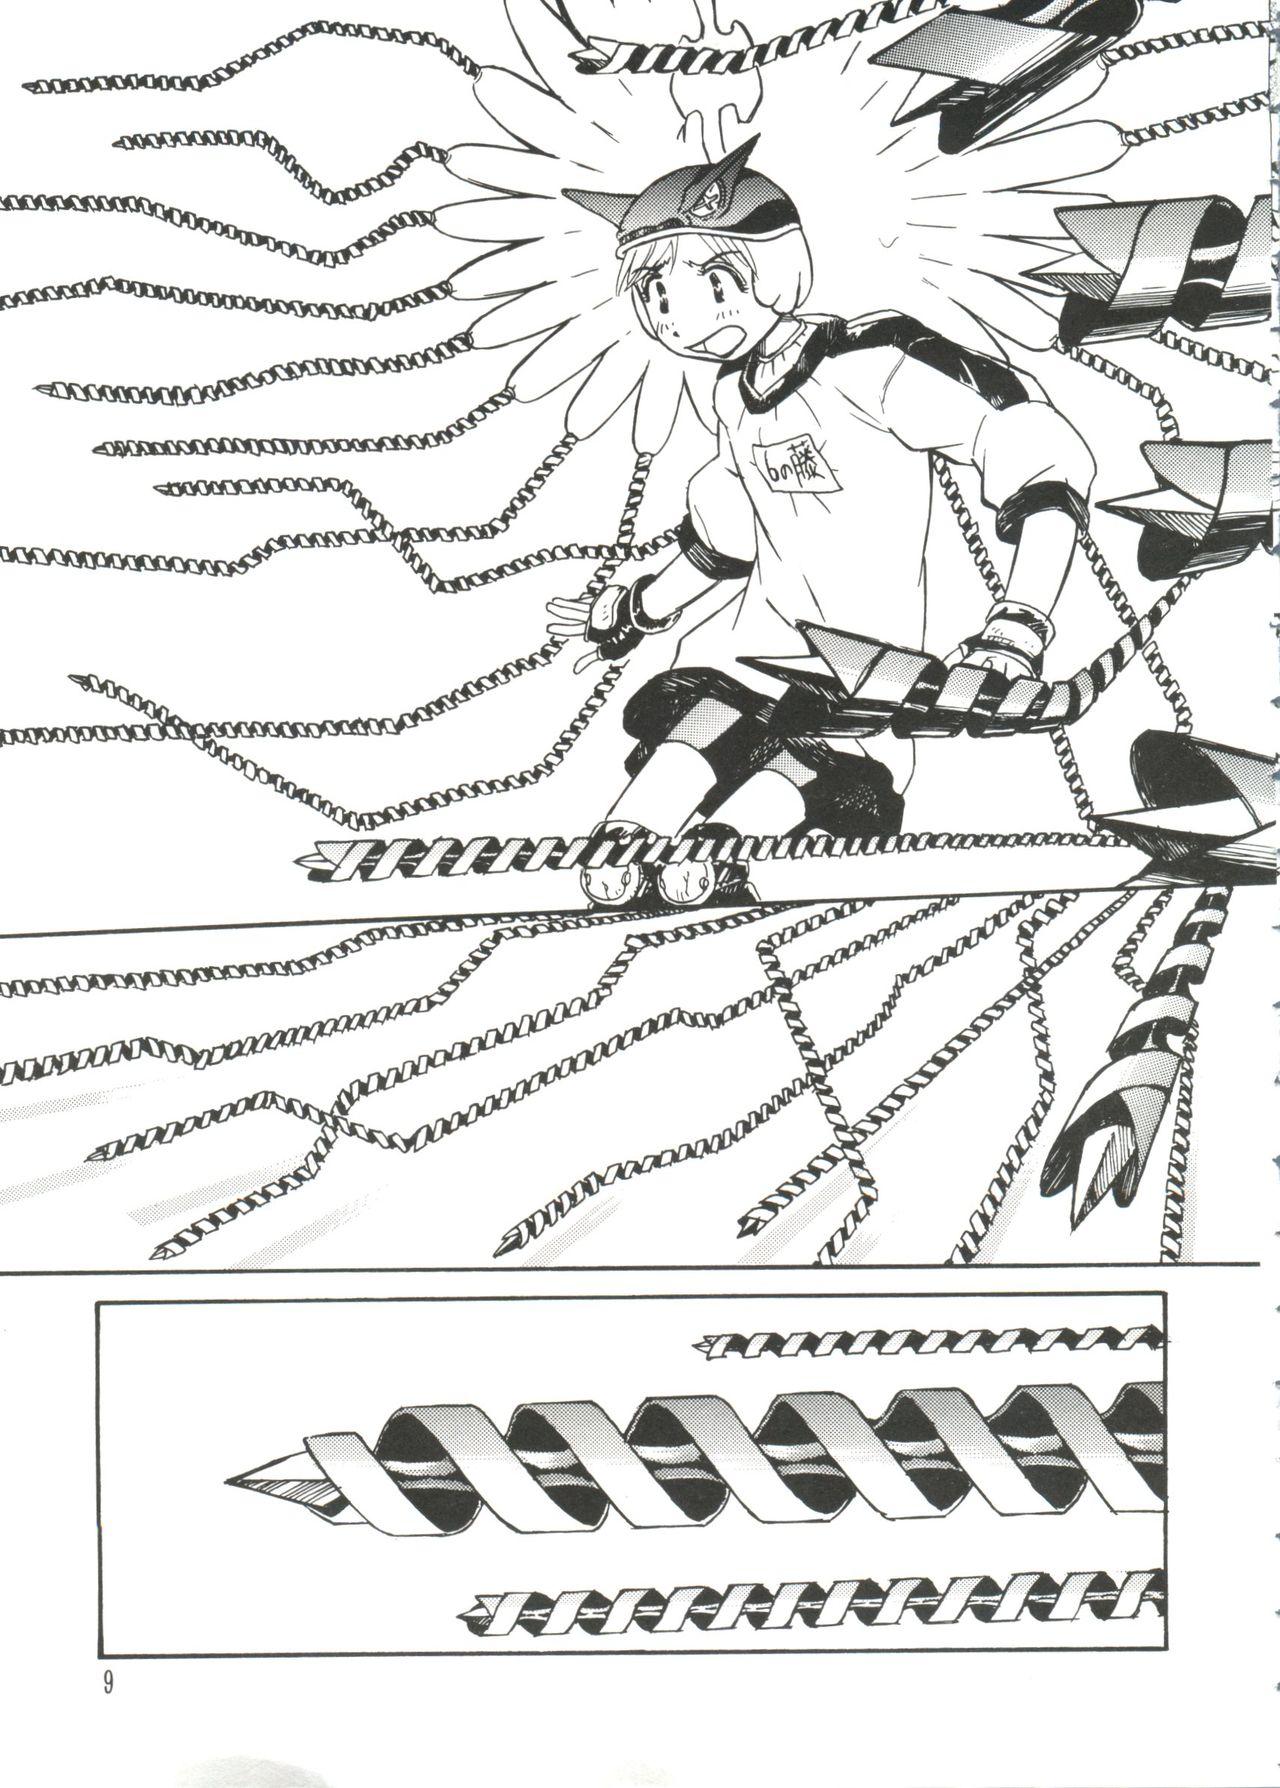 Best Blowjob Love Chara Taizen No. 7 - Cardcaptor sakura Love hina Magic knight rayearth Revolutionary girl utena Alien 9 Carro - Page 9